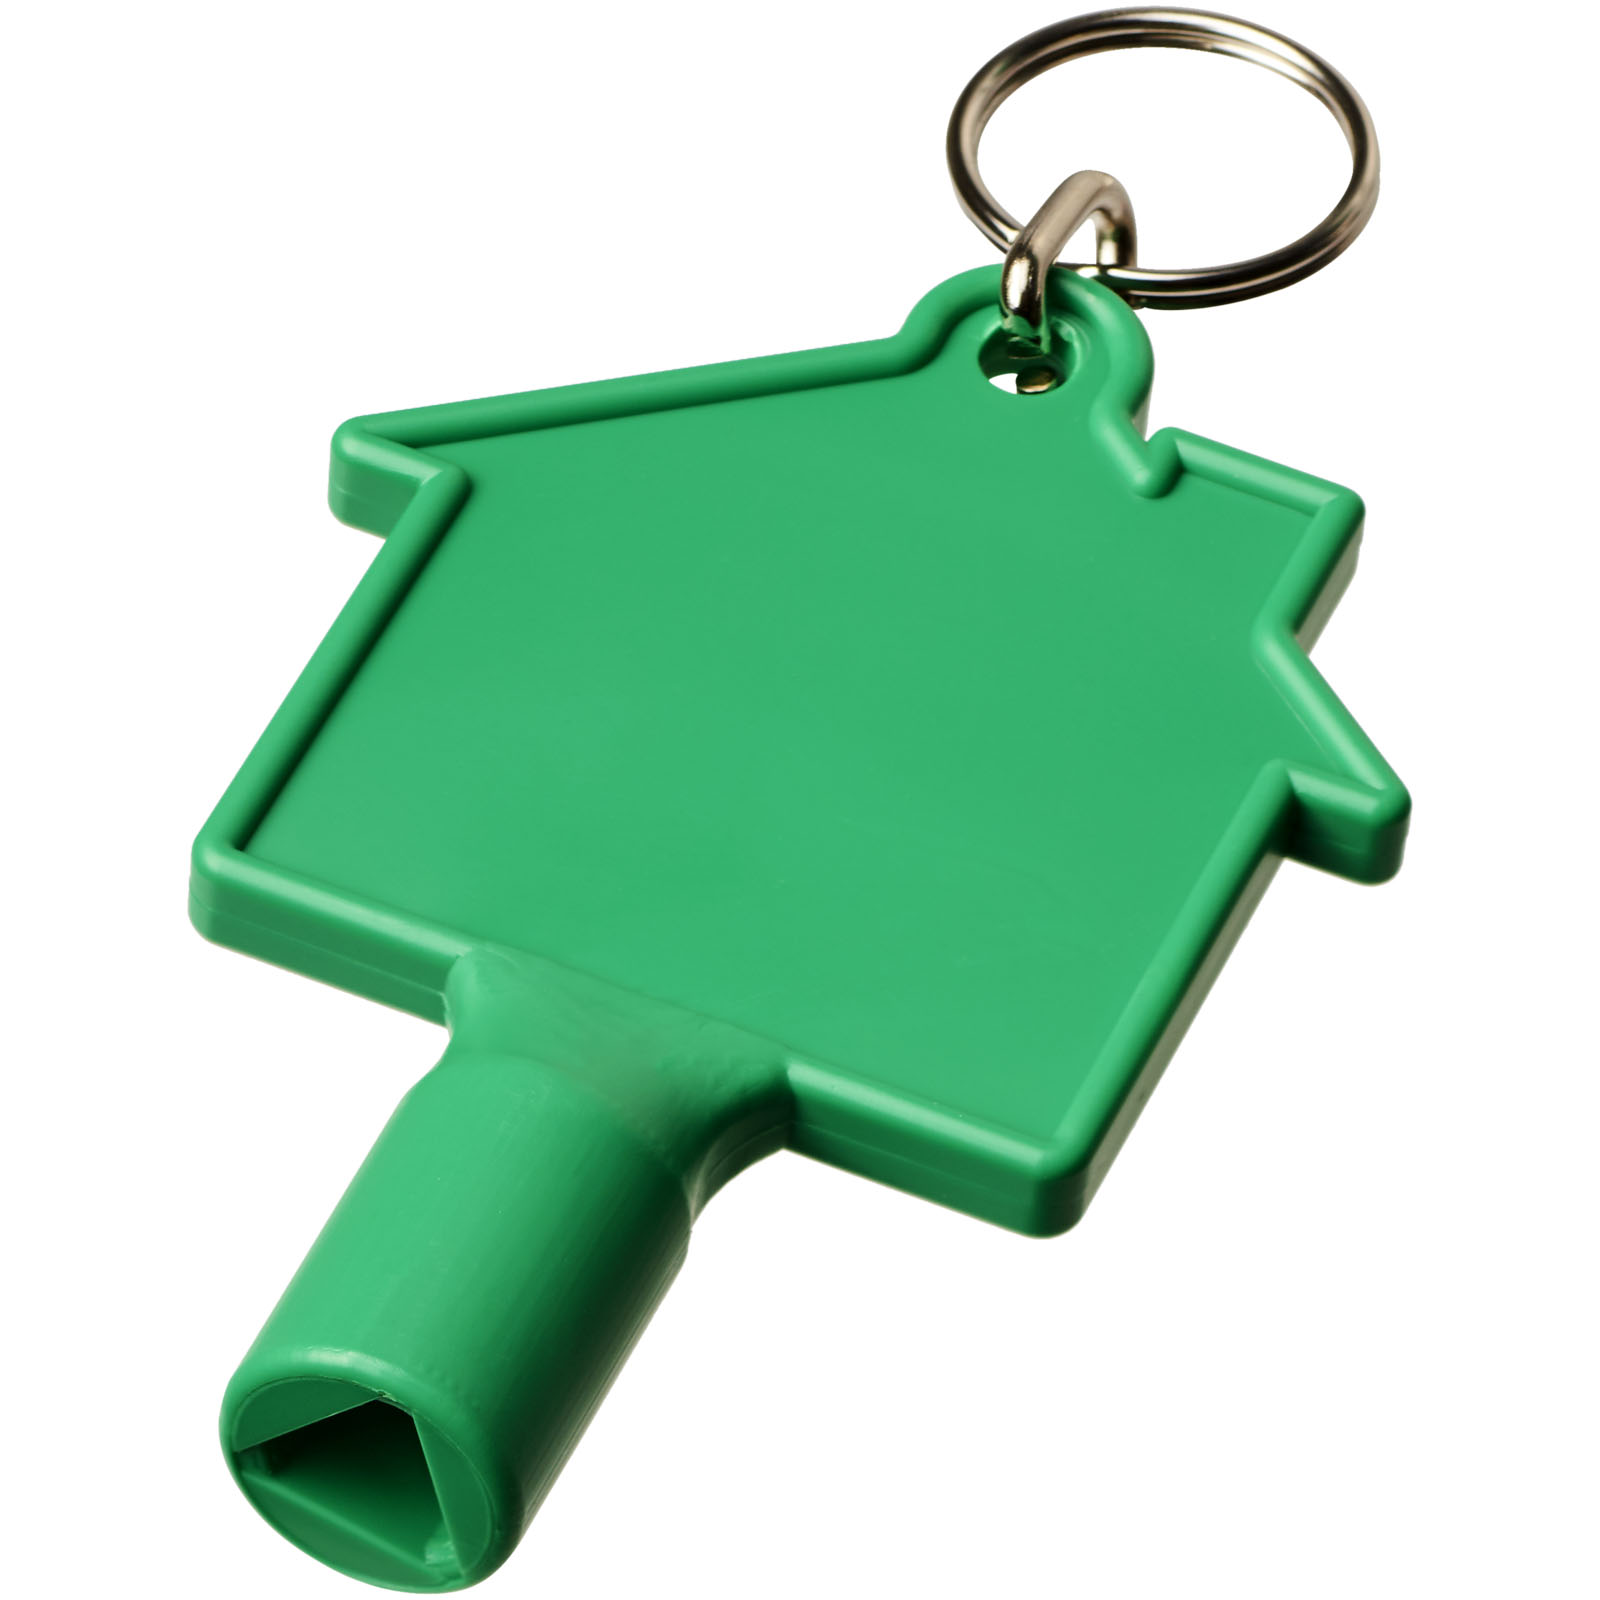 Advertising Keychains & Keyrings - Maximilian house-shaped utility key with keychain